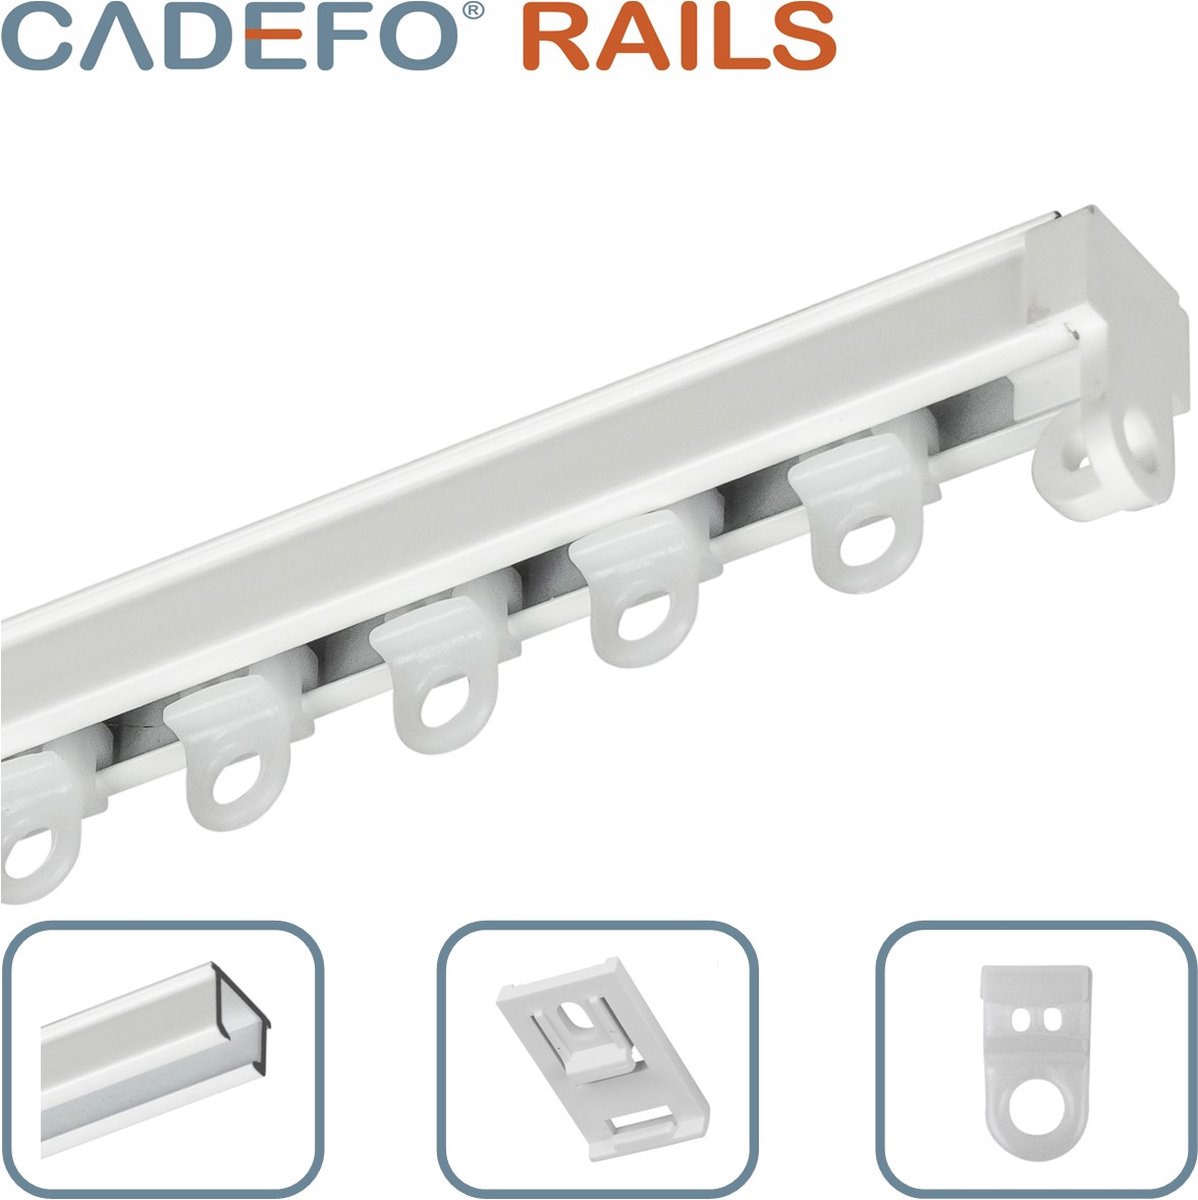 CADEFO RAILS (251 - 300 cm) Gordijnrails - Compleet op maat! - UIT 1 STUK - Leverbaar tot 6 meter - Plafondbevestiging - Lengte 269 cm